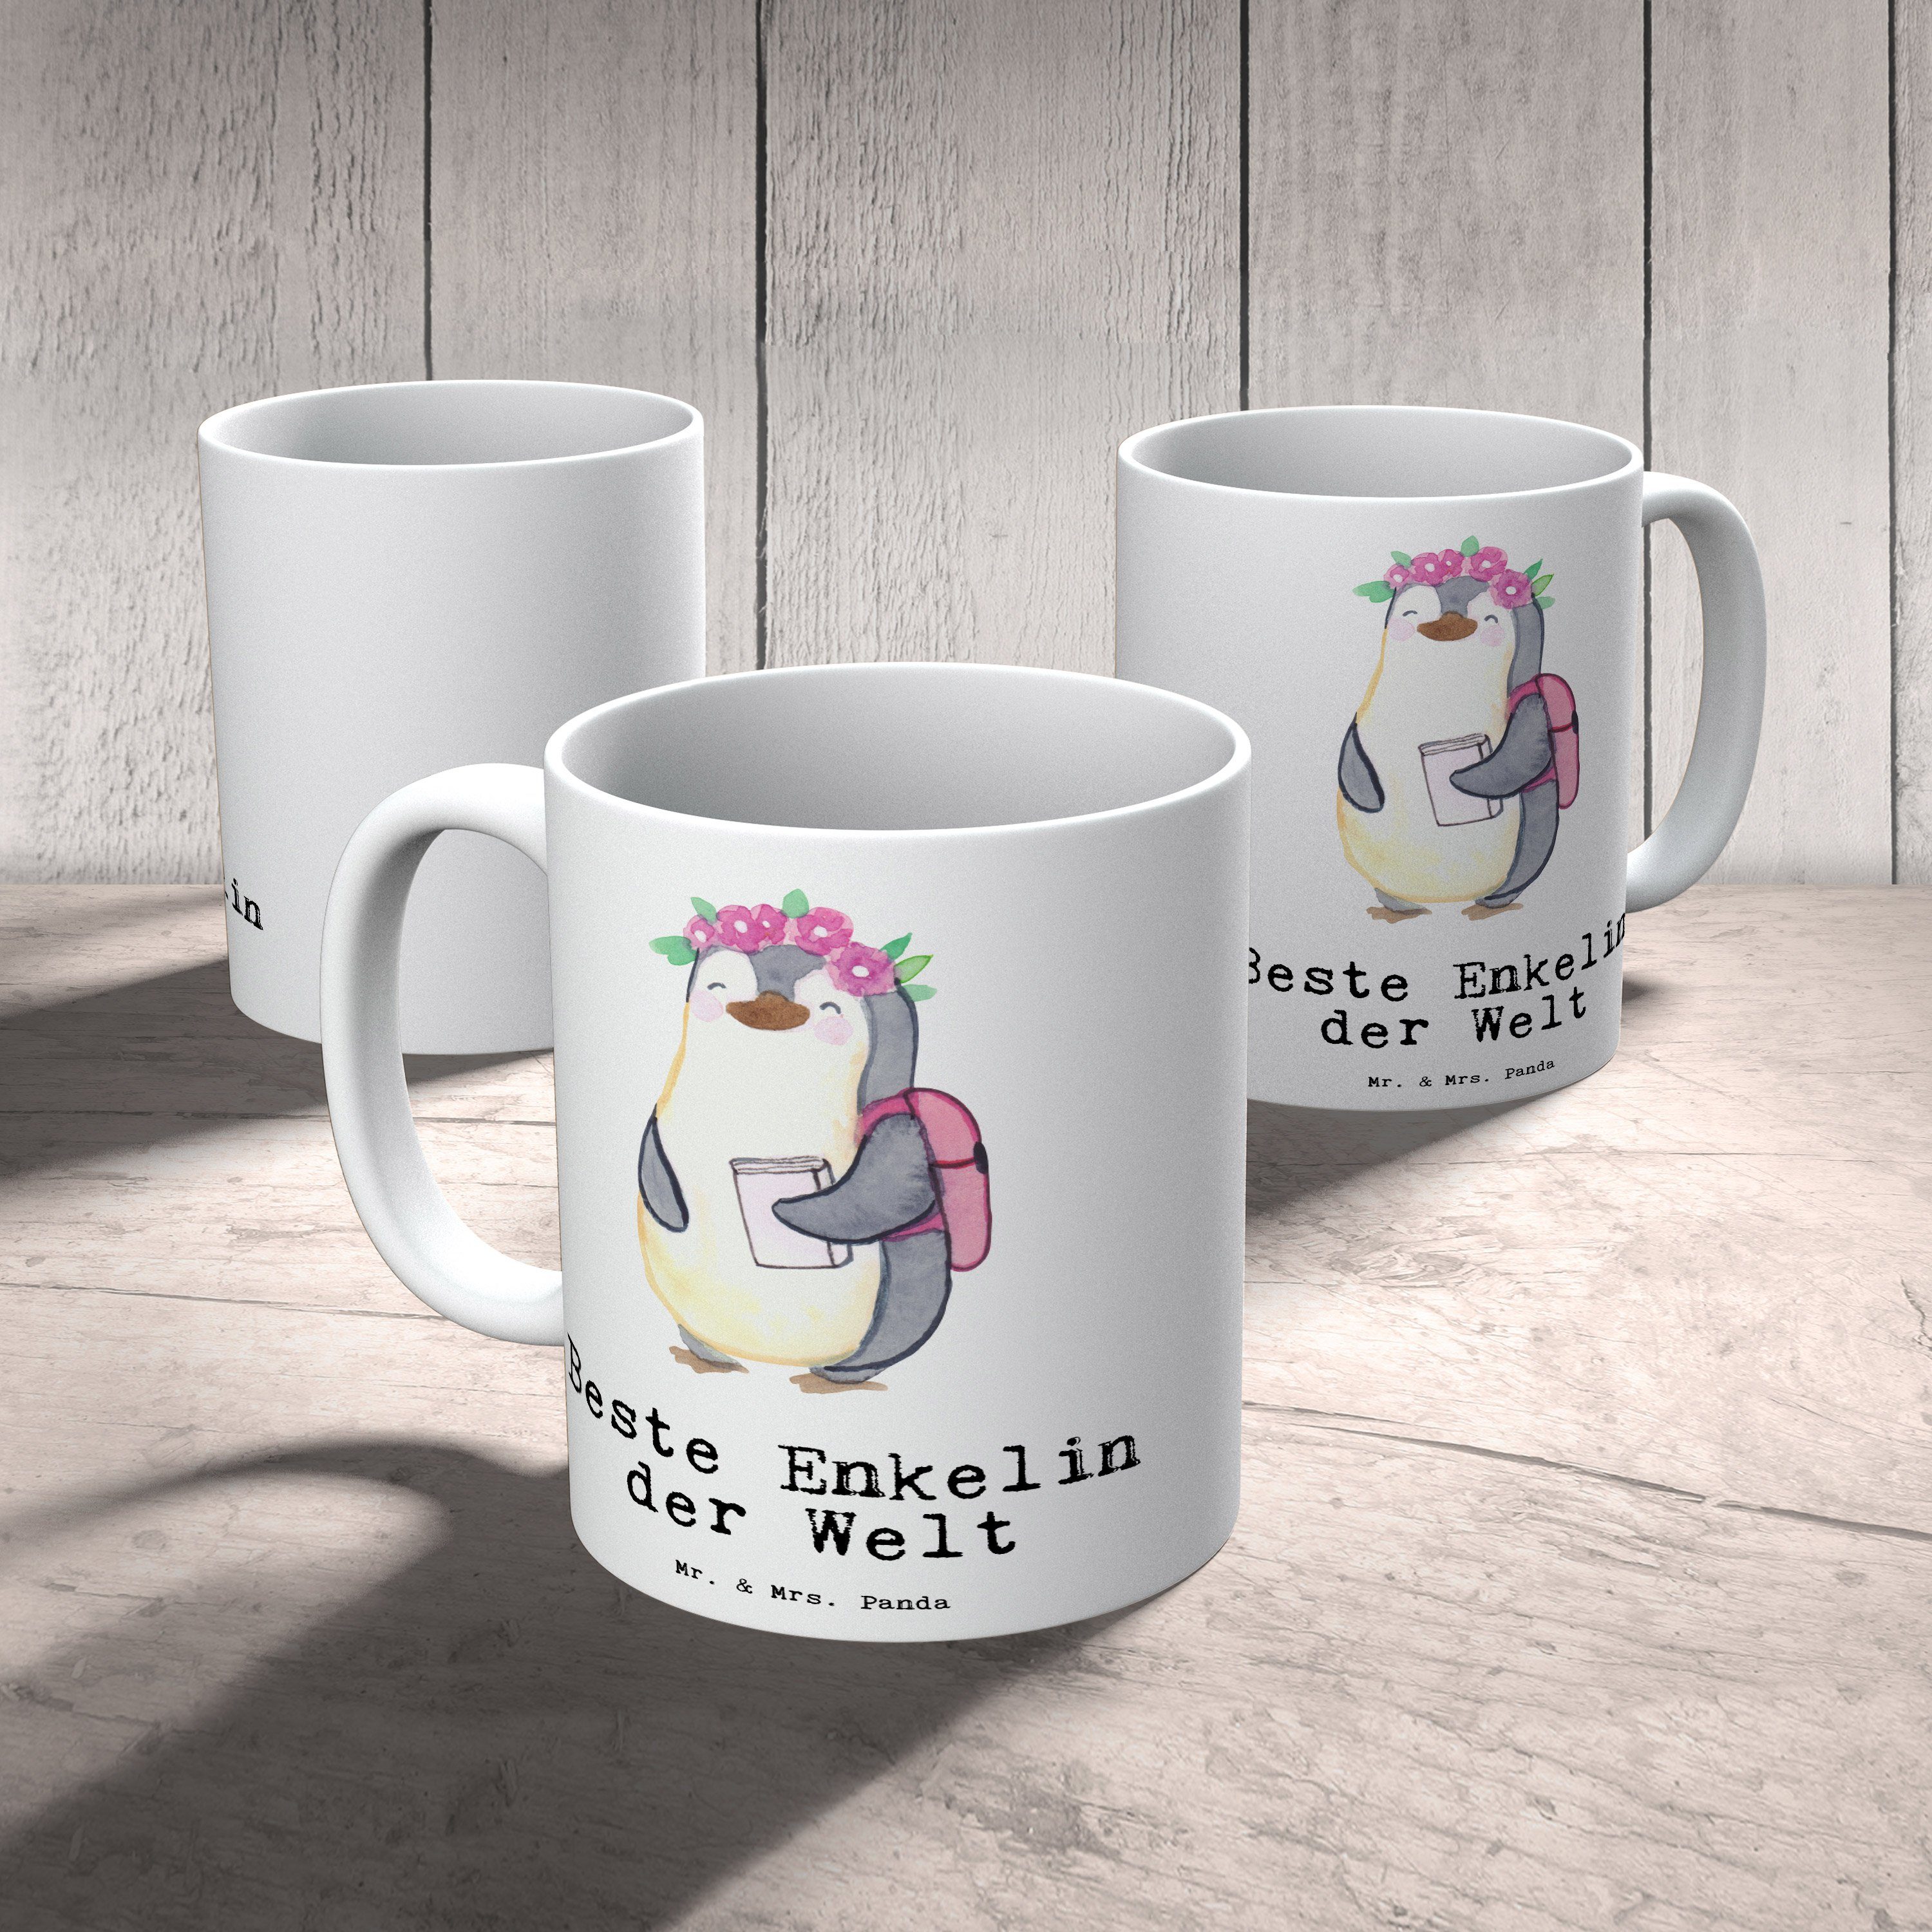 Mr. & Mrs. Panda Tee, - Kaffeetasse, Pinguin Geschenk, Büro, Keramik von Enkelin der Beste Kaffeebecher, Tasse - Schenken, Weiß Tochter, Bedanken, Geburtstag, Becher, Welt Kind